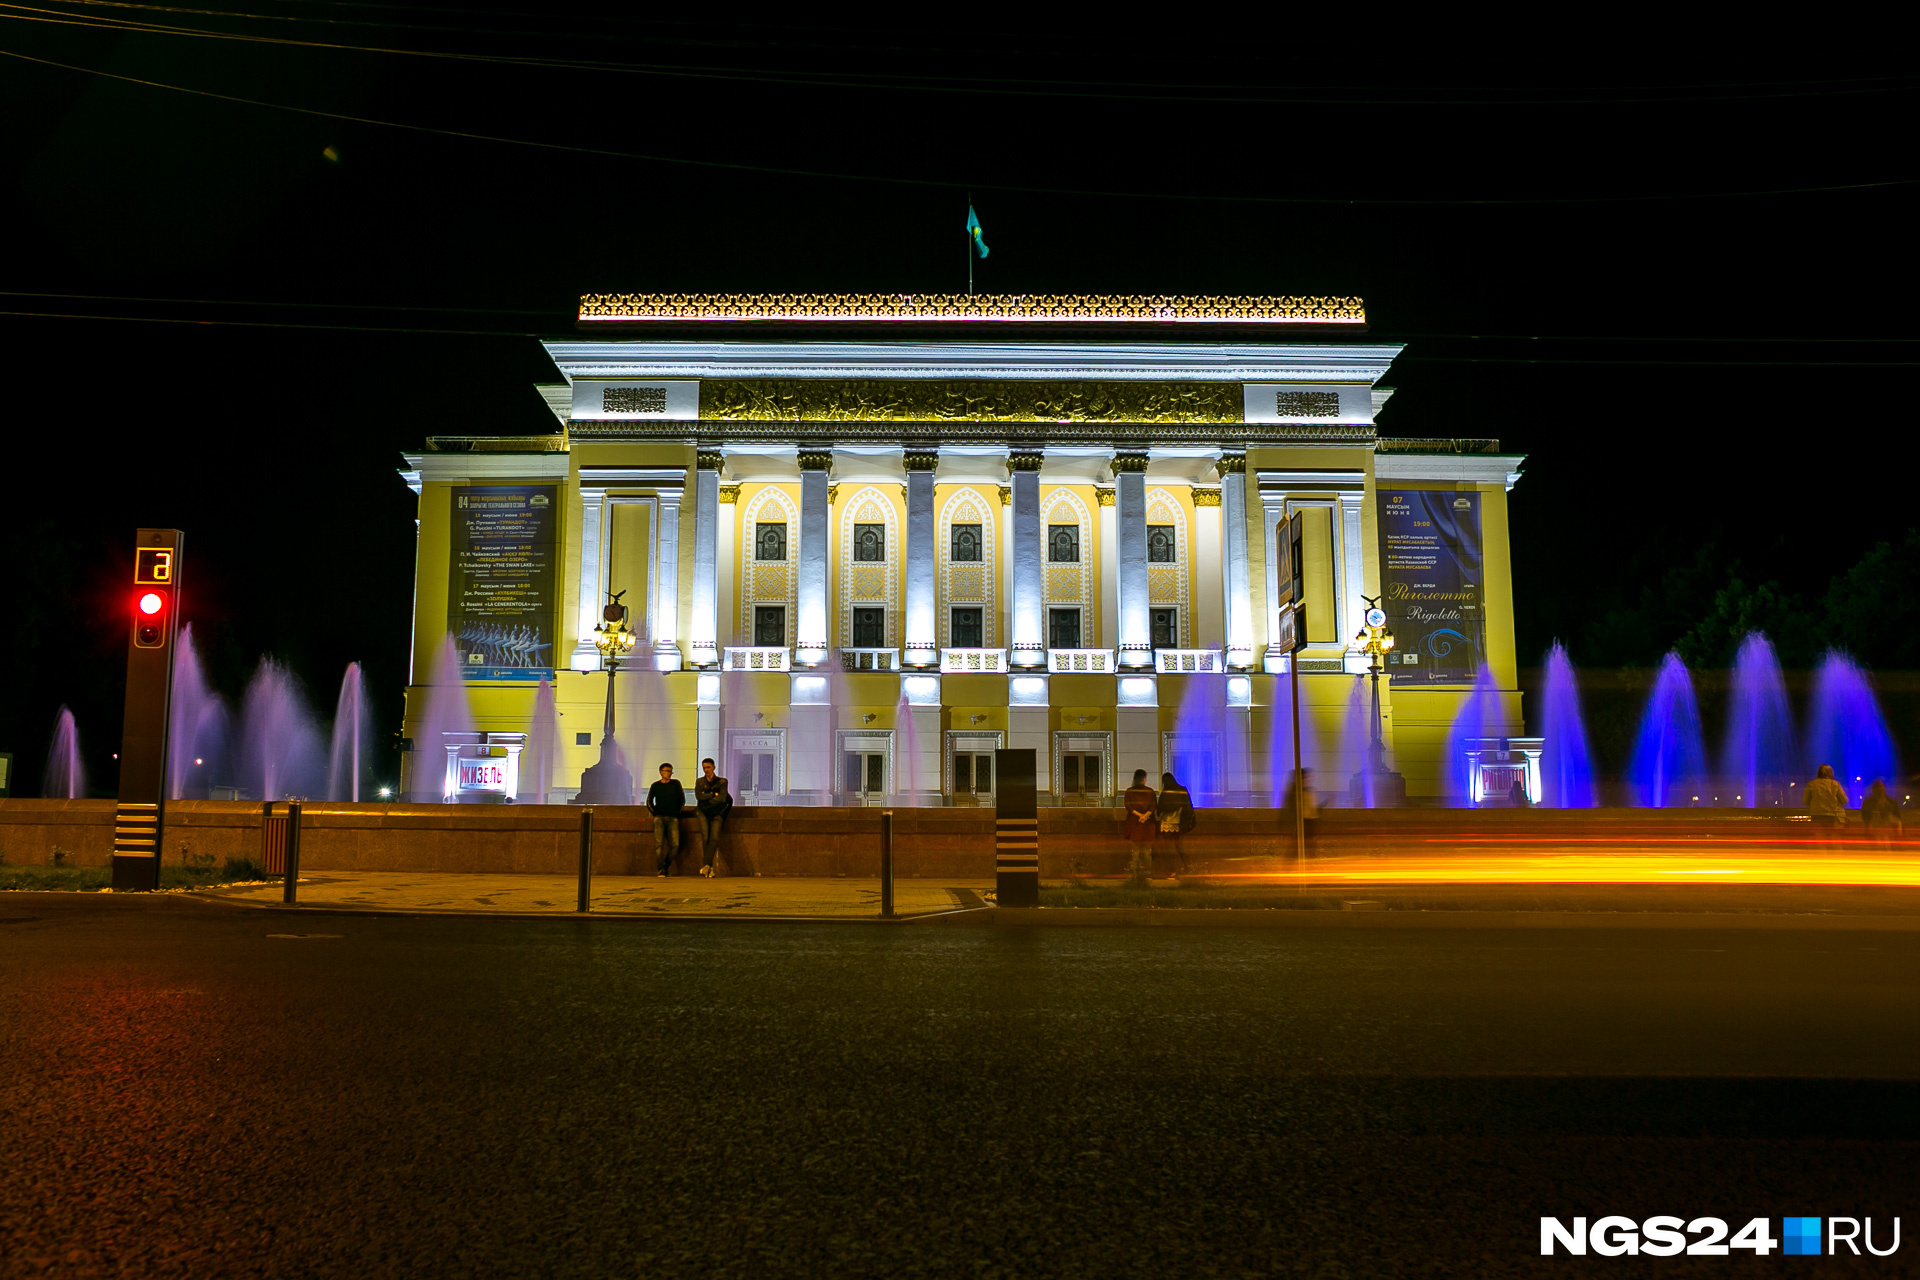 Так оформлена подсветка Казахского Государственного театра оперы и балета им. Абая.